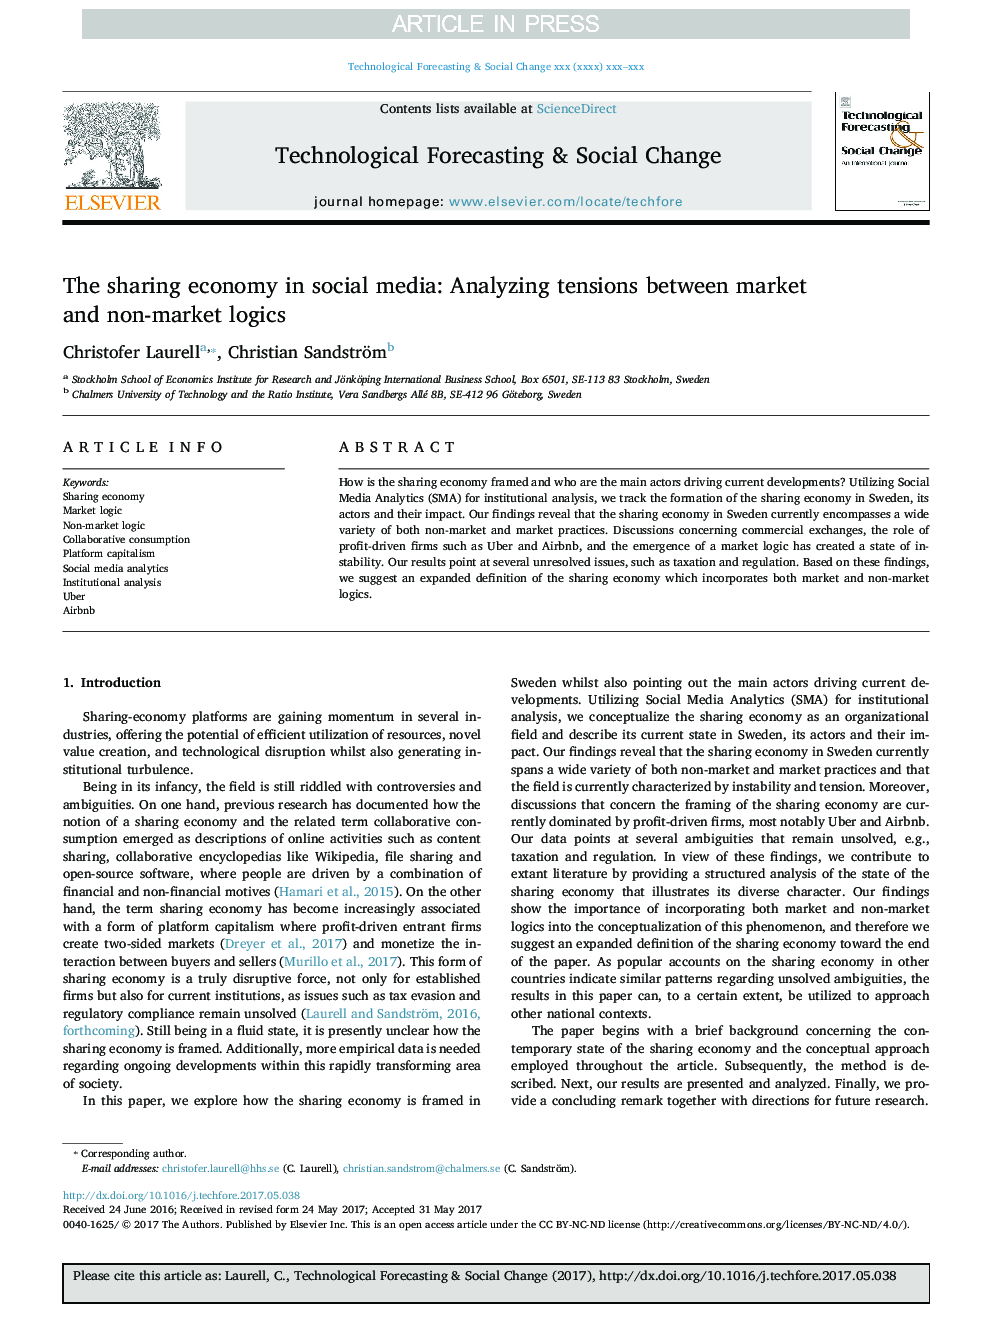 اقتصاد اشتراک در رسانه های اجتماعی: تحلیل تنش ها بین منطق های بازار و غیر بازار 